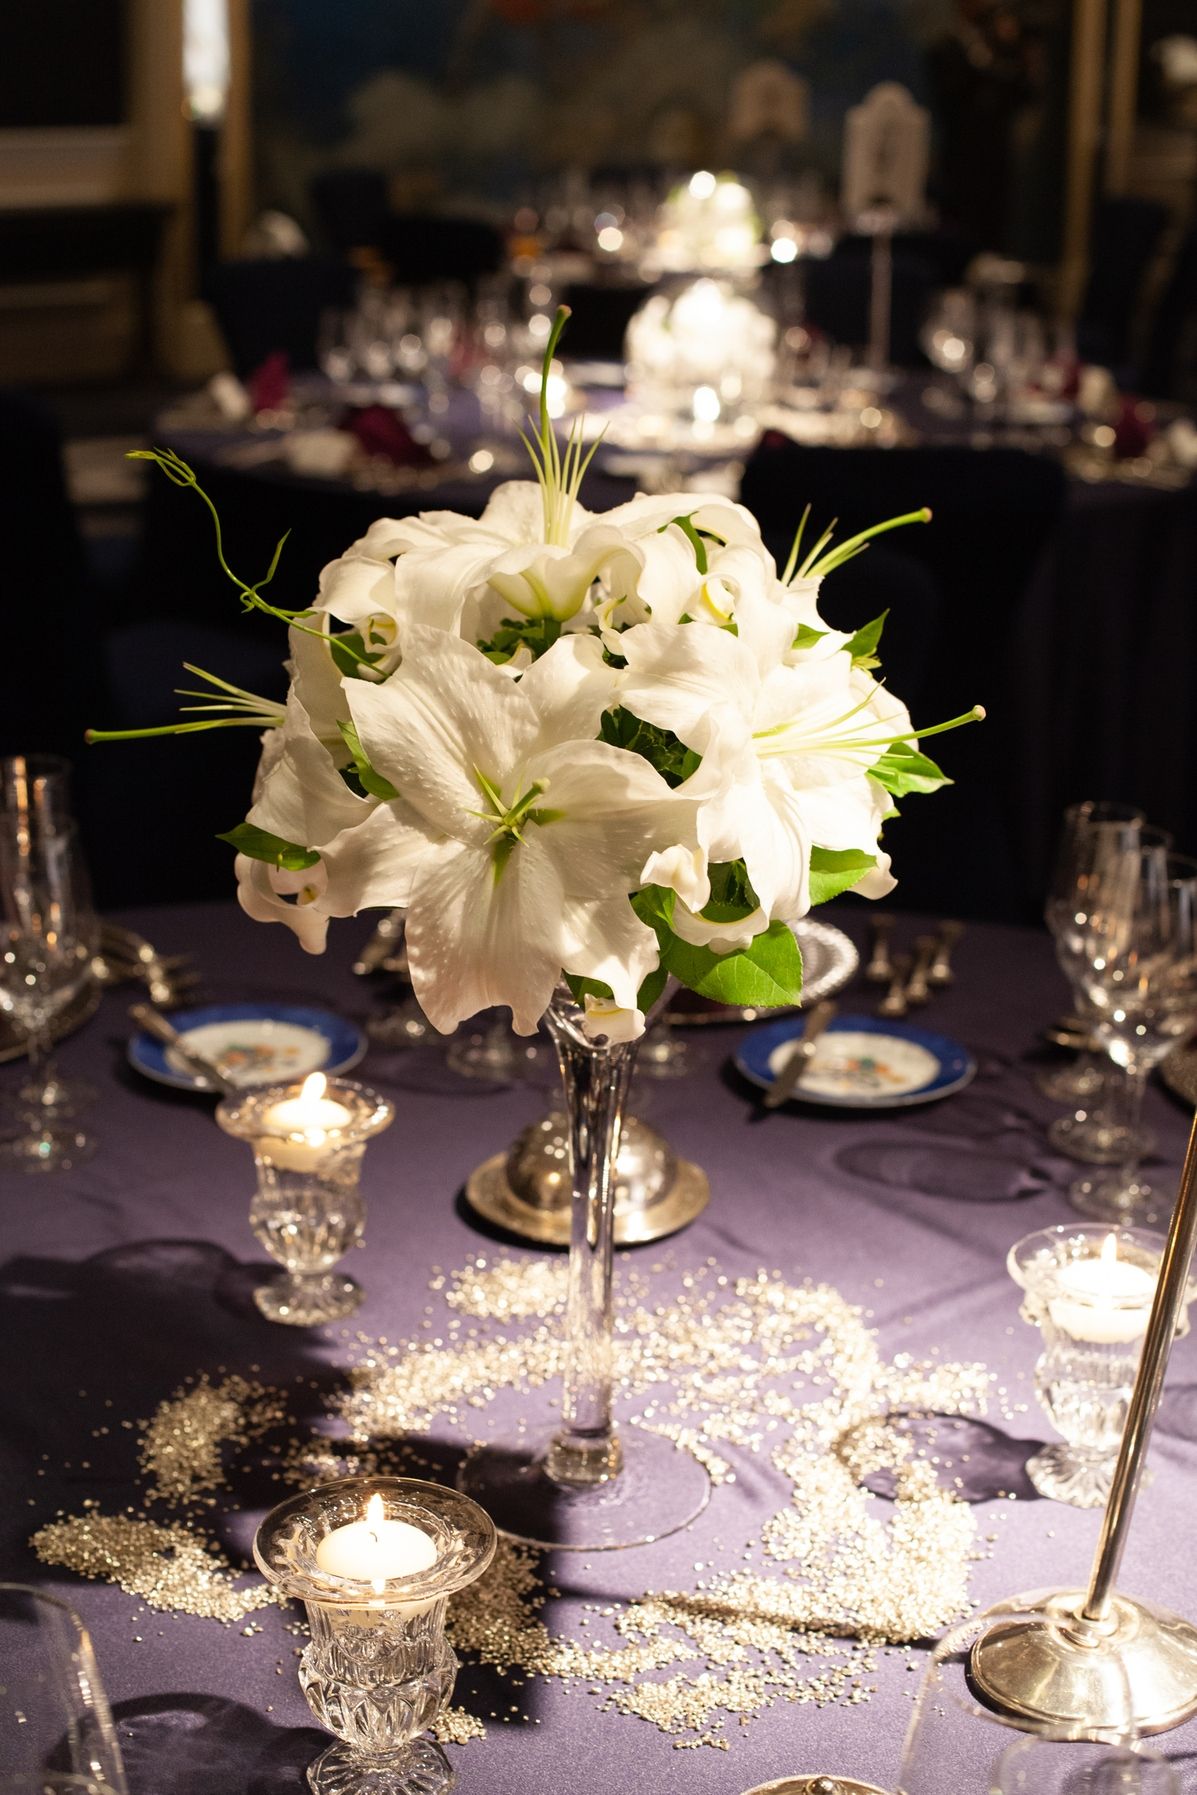 結婚式のお花選び 人気のお花とテーブル装花のコーディネートアイデアをご紹介 ウェディングニュース